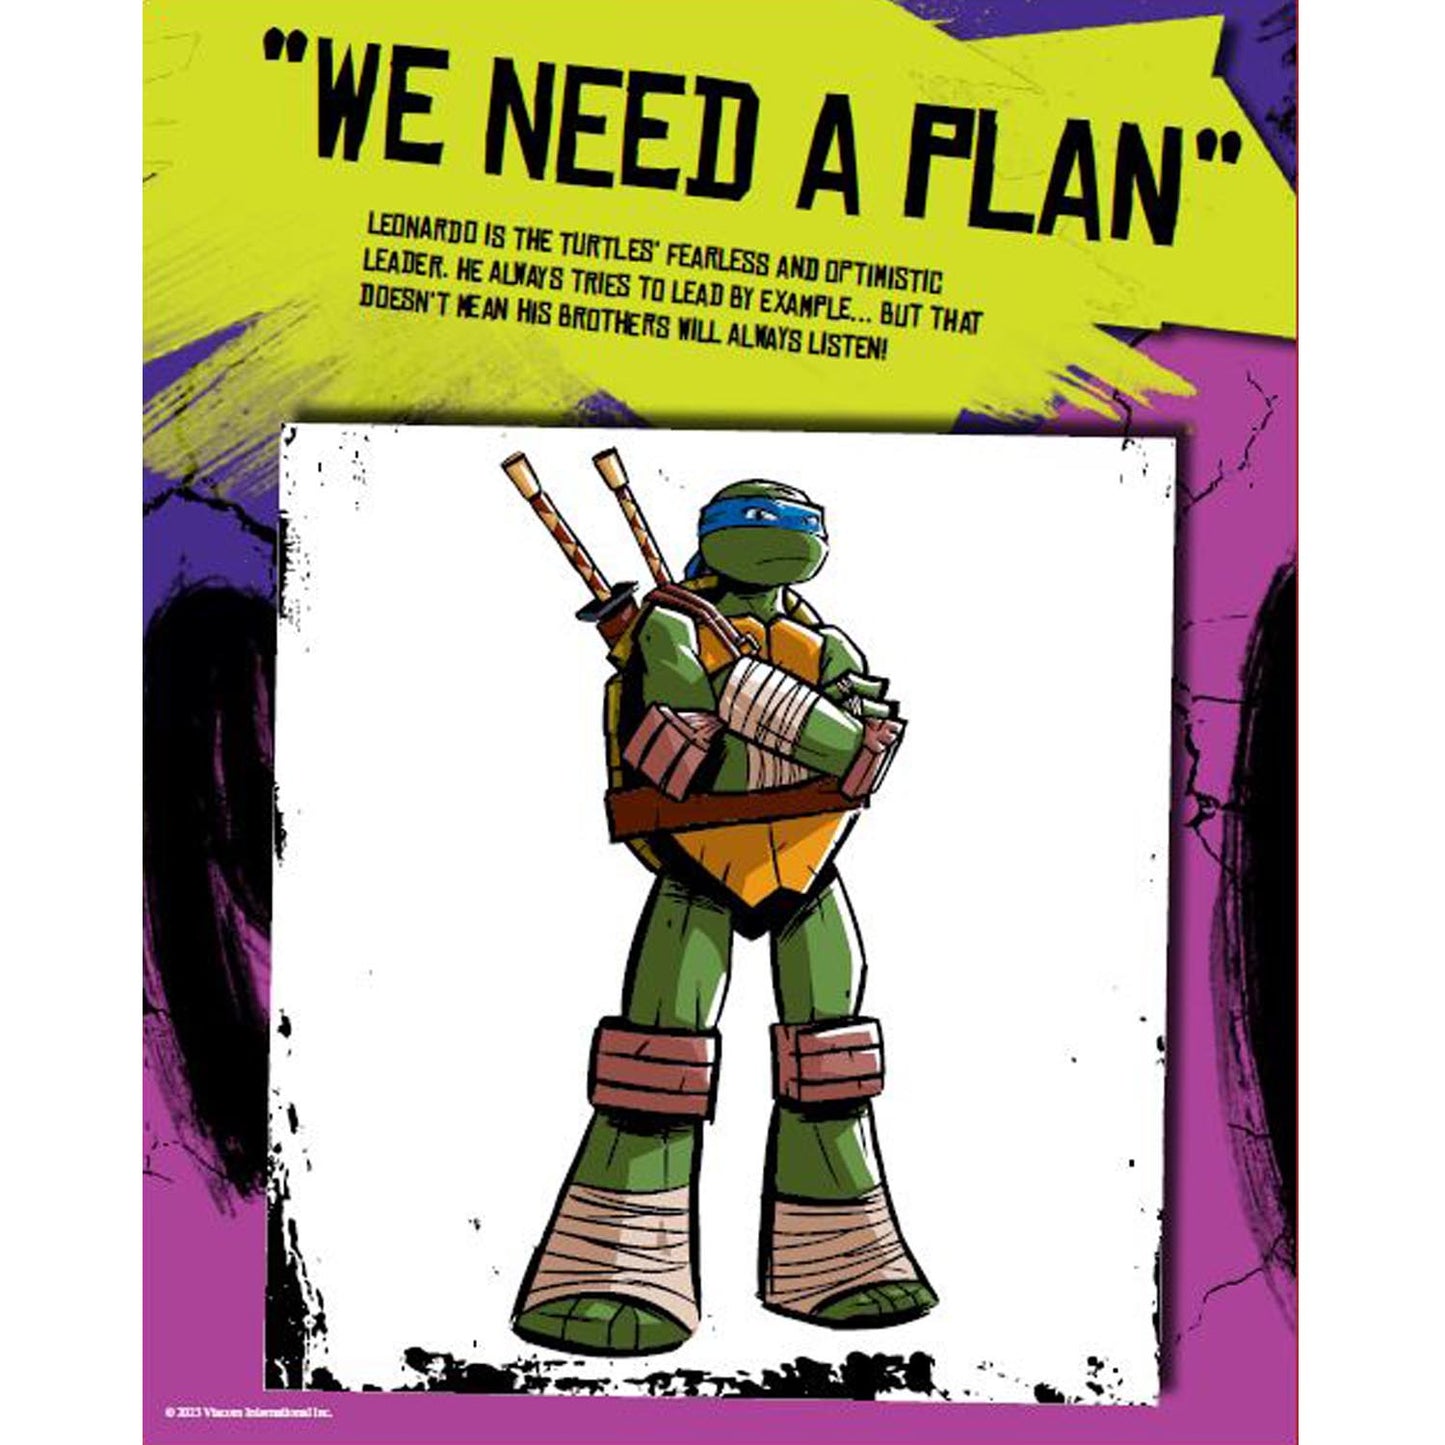 Teenage Mutant Ninja Turtles Copy colouring | Colouring book | Turtles books | TMNT | Copy Colouring Books